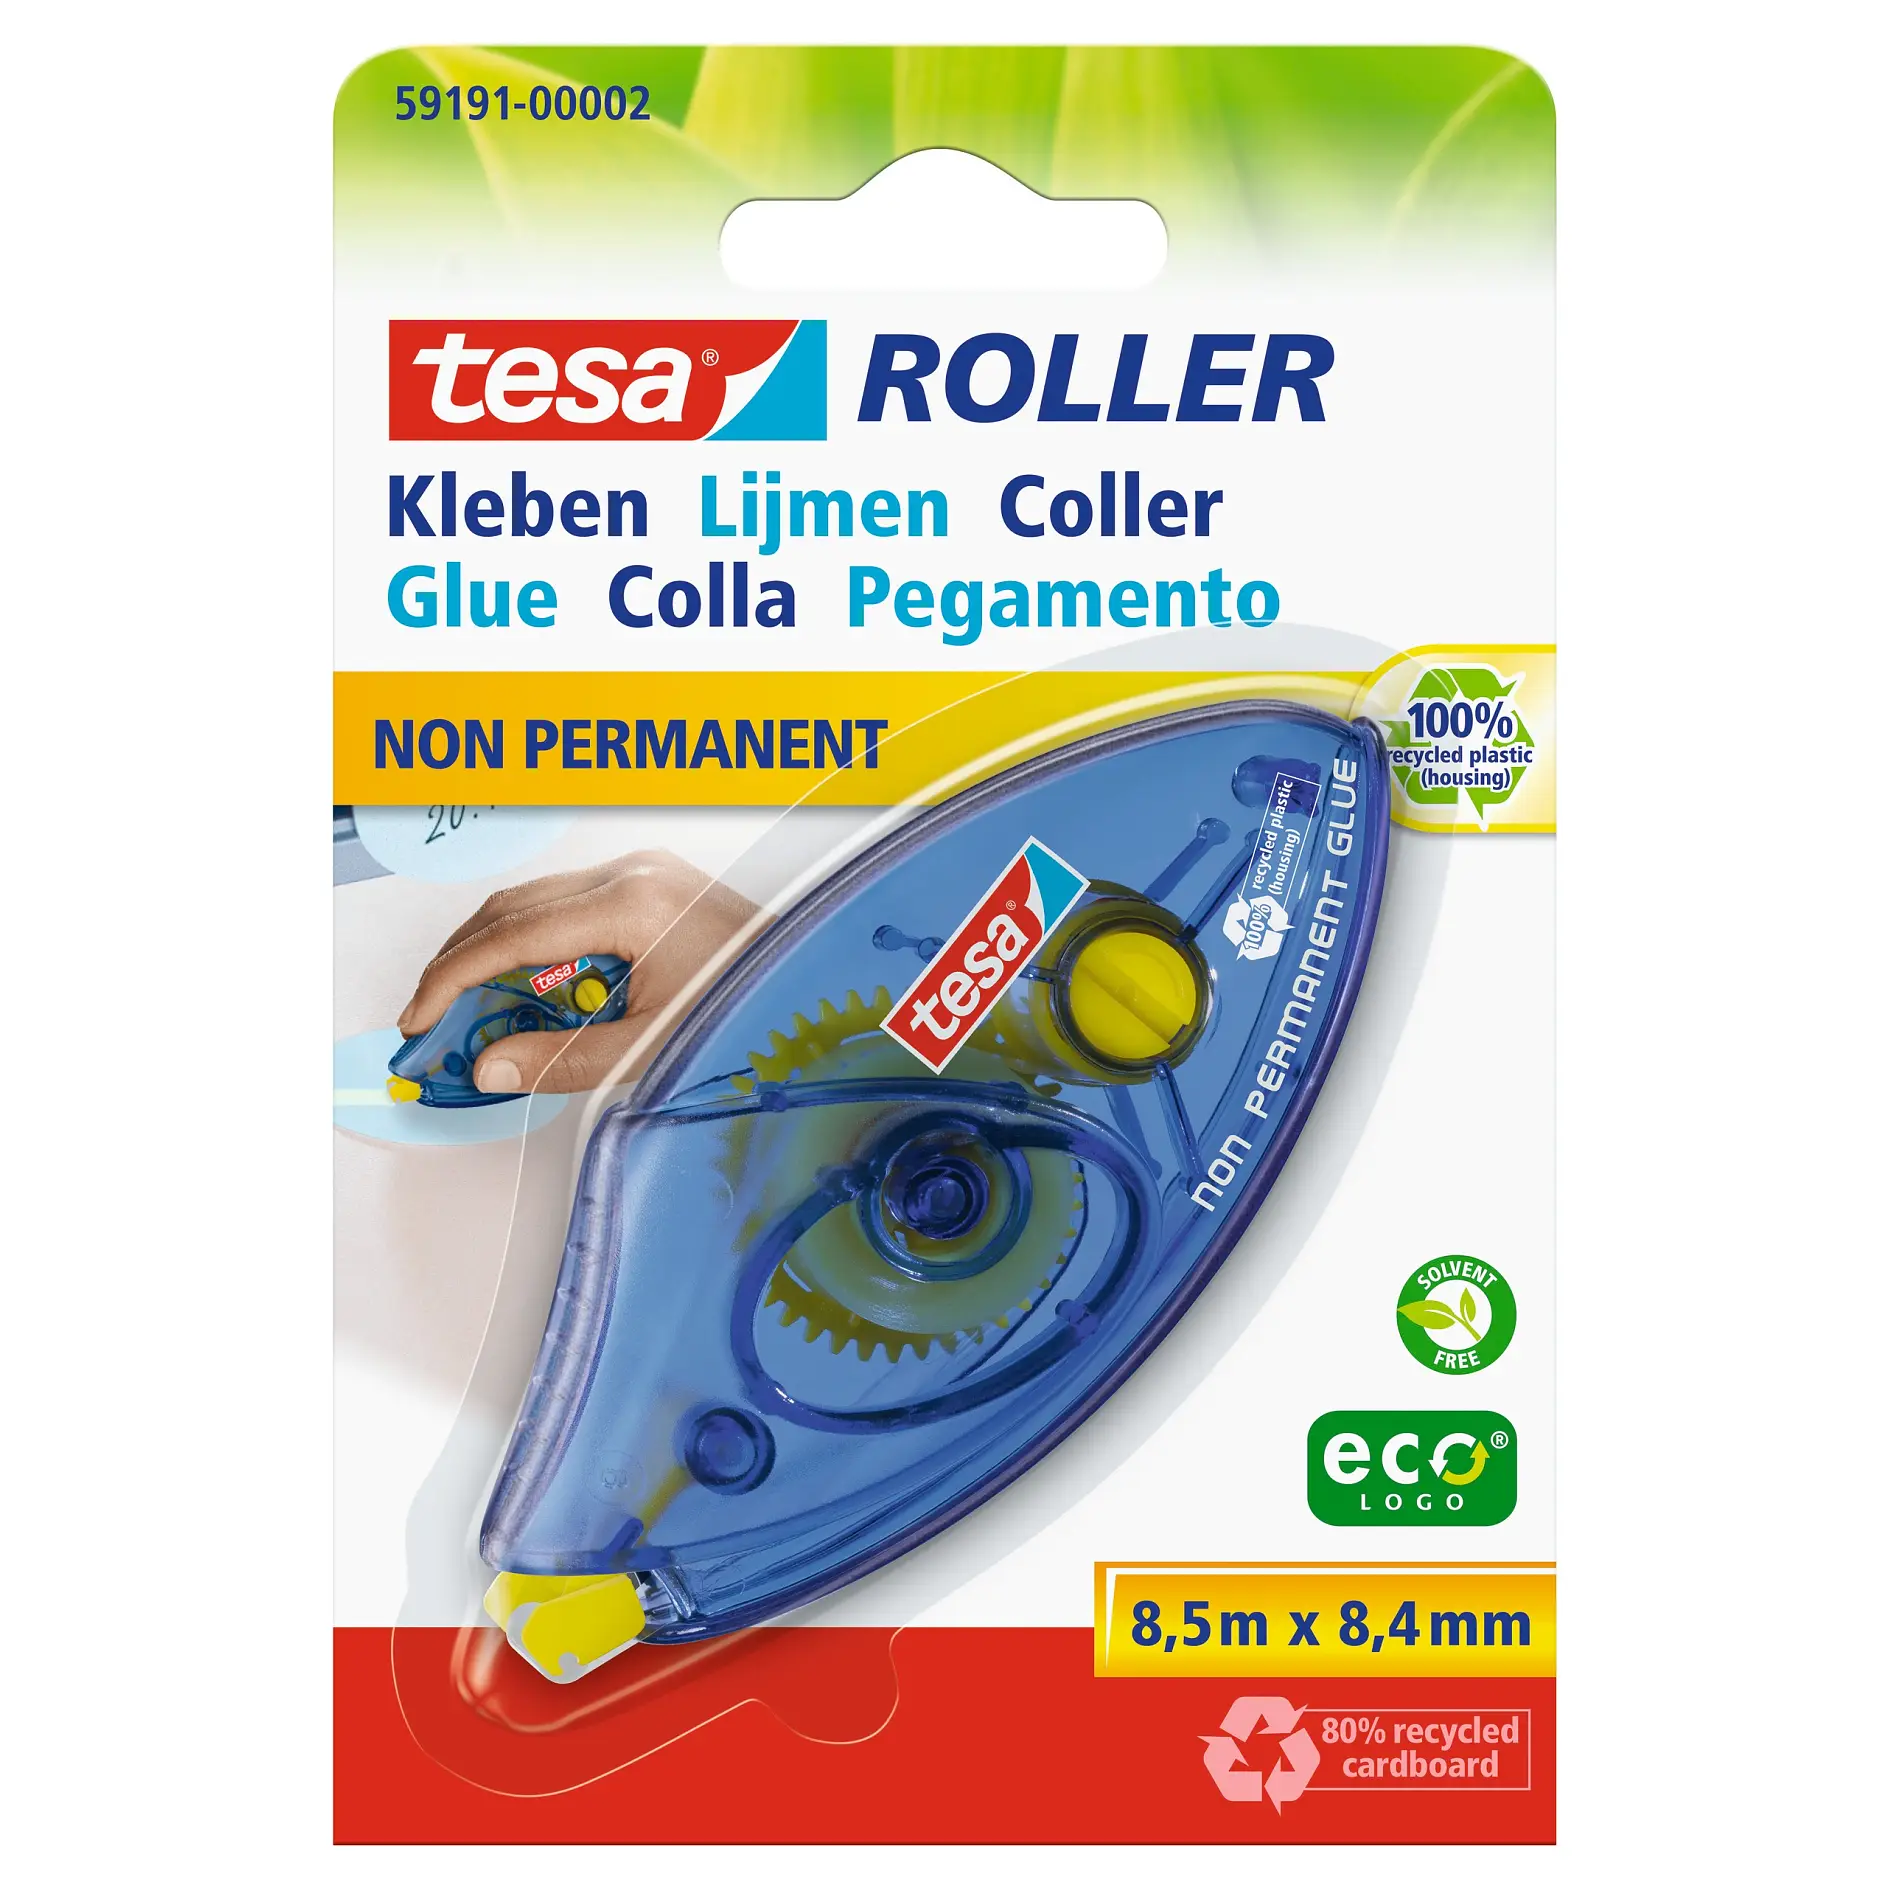 [en-en] tesa Roller Glue Non Permanent Disposable ecoLogo